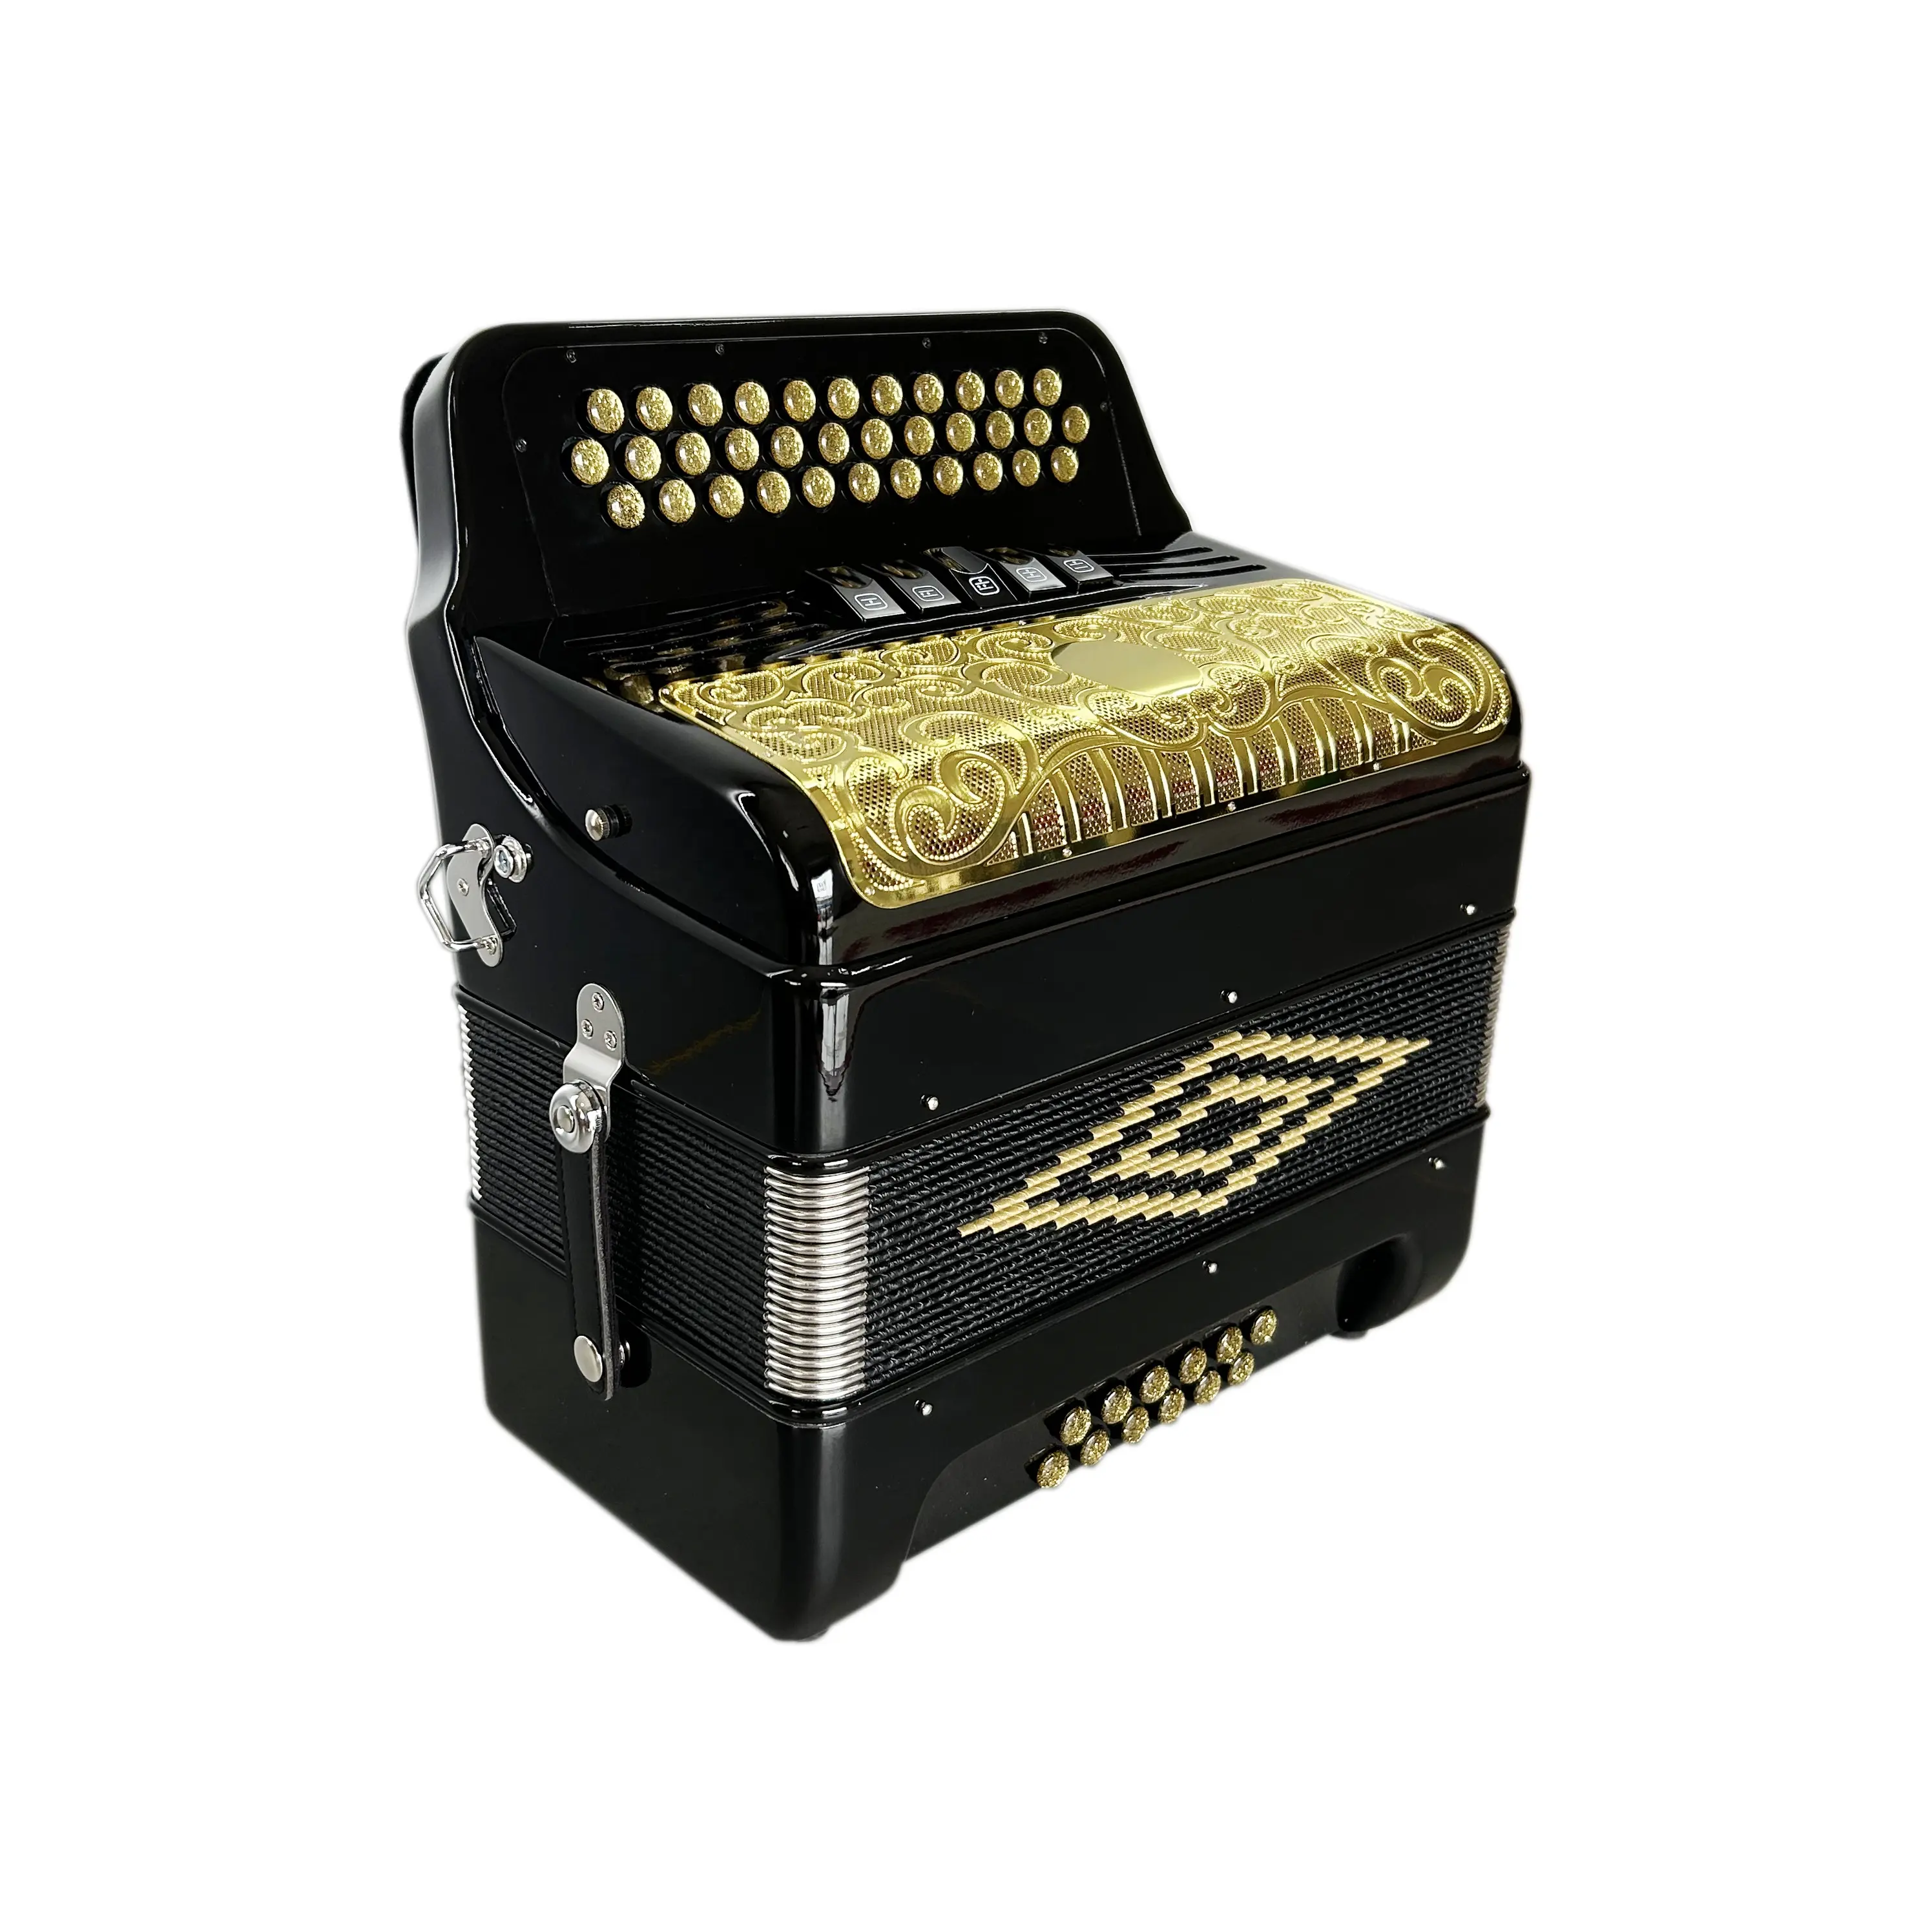 SEASOUND OEM 34 boutons 12 basses 5 registres noir brillant Acordeon or gril boutons dorés accordéon JB3412D